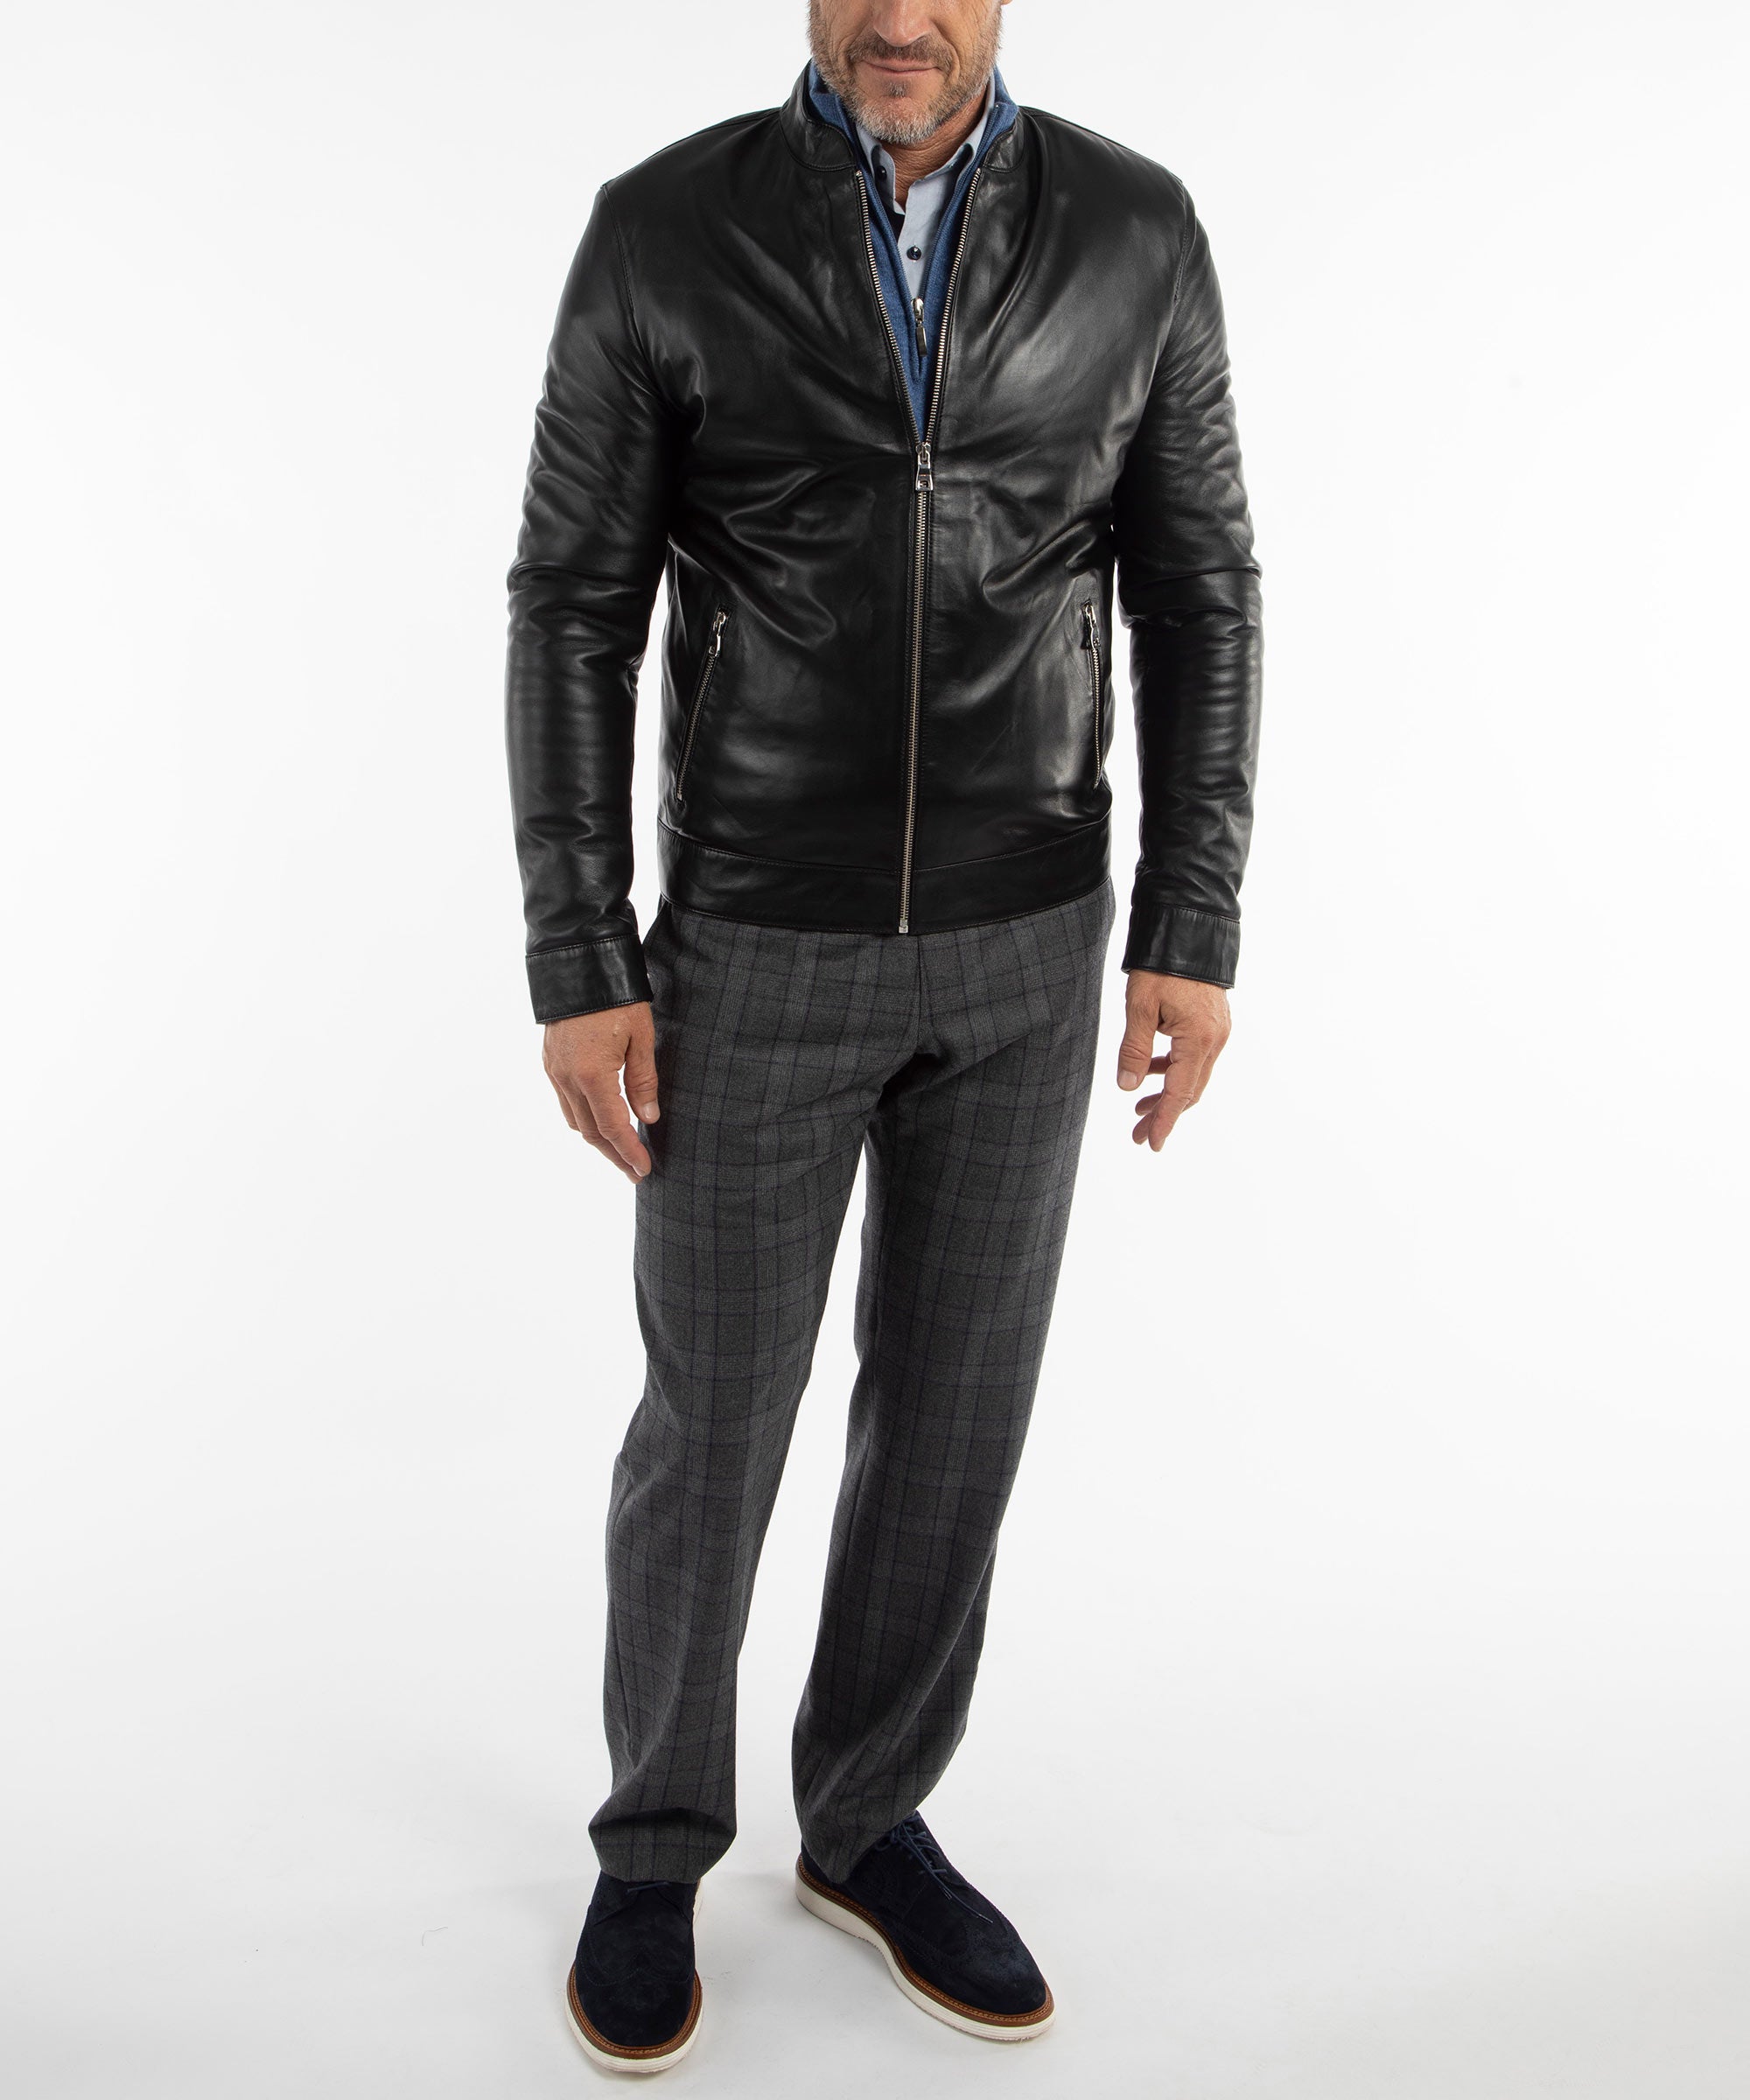 Black Leather Denim Jacket - Rugged & Iconic. | Buffalo Jackson